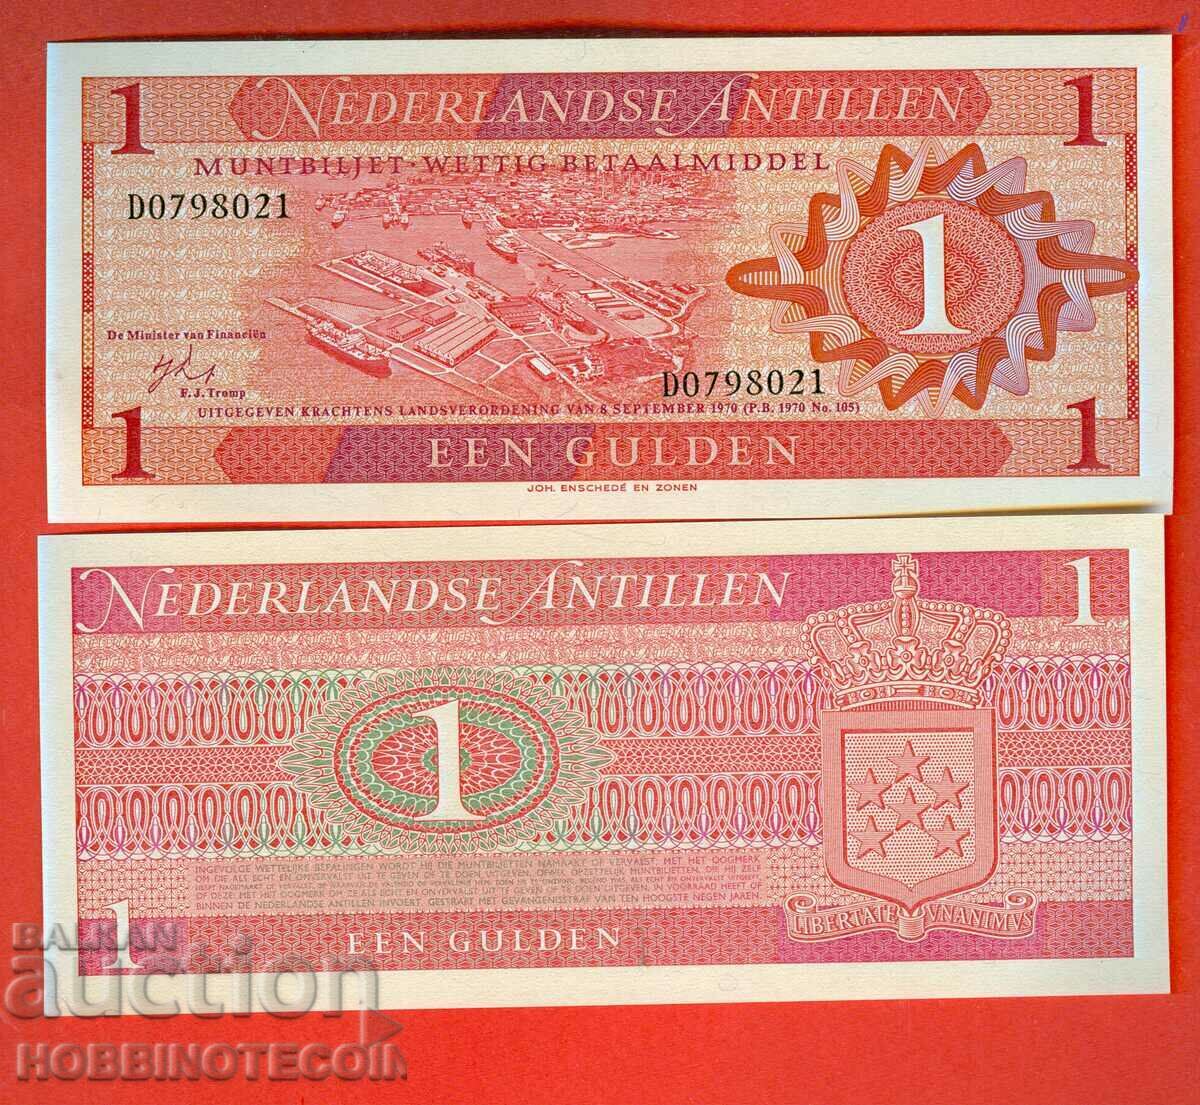 ANTILELE OLANDEZE - 1 număr Gulden 1970 NOU UNC